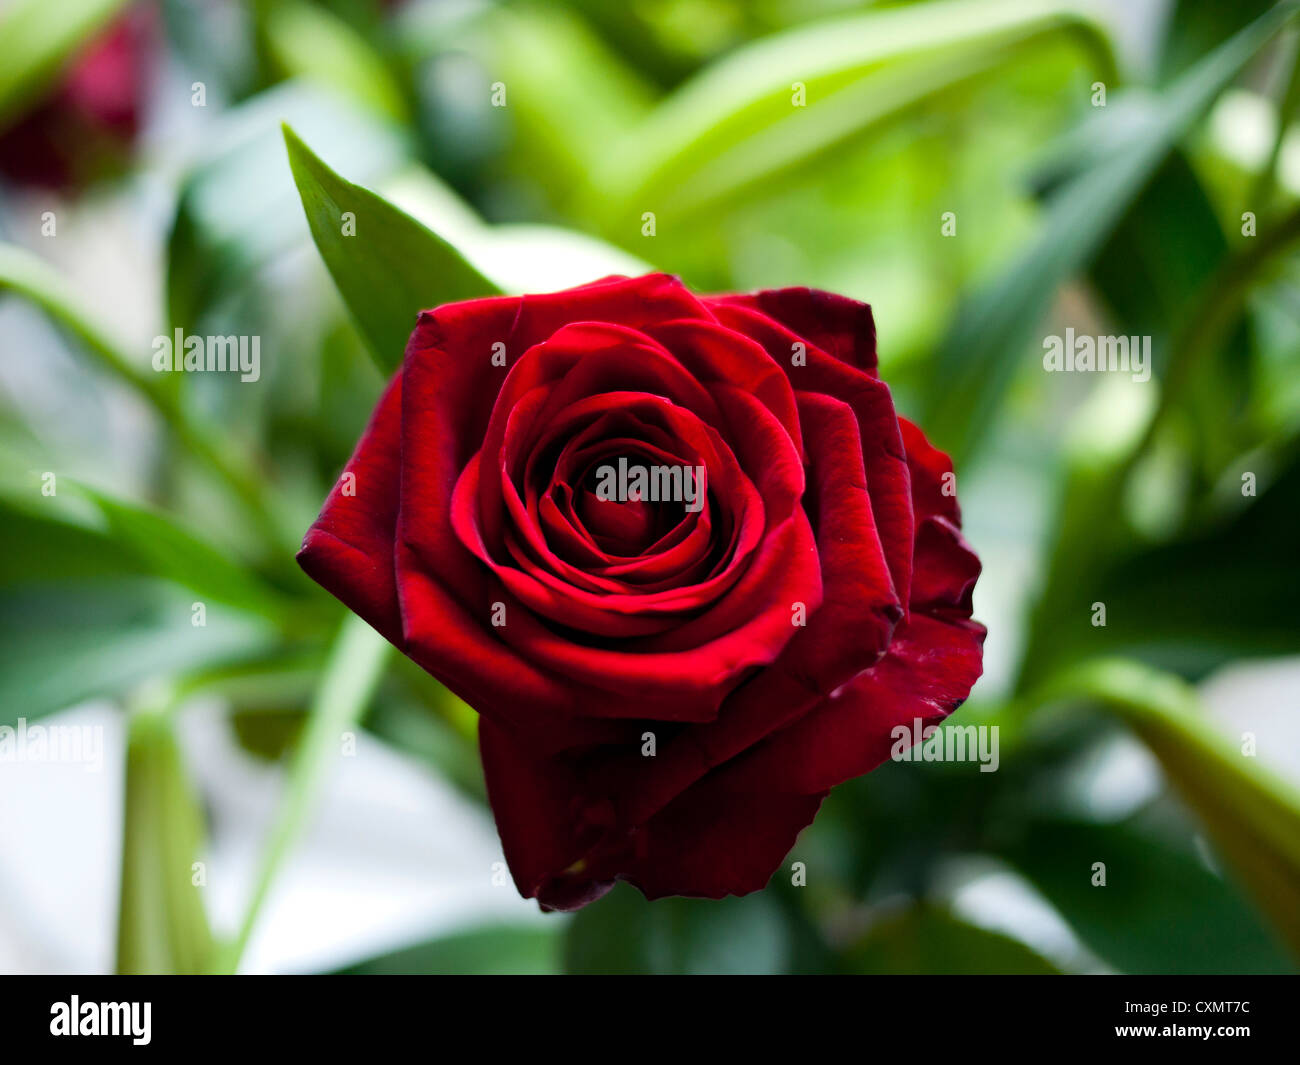 Red Rose.England, UK. Stock Photo